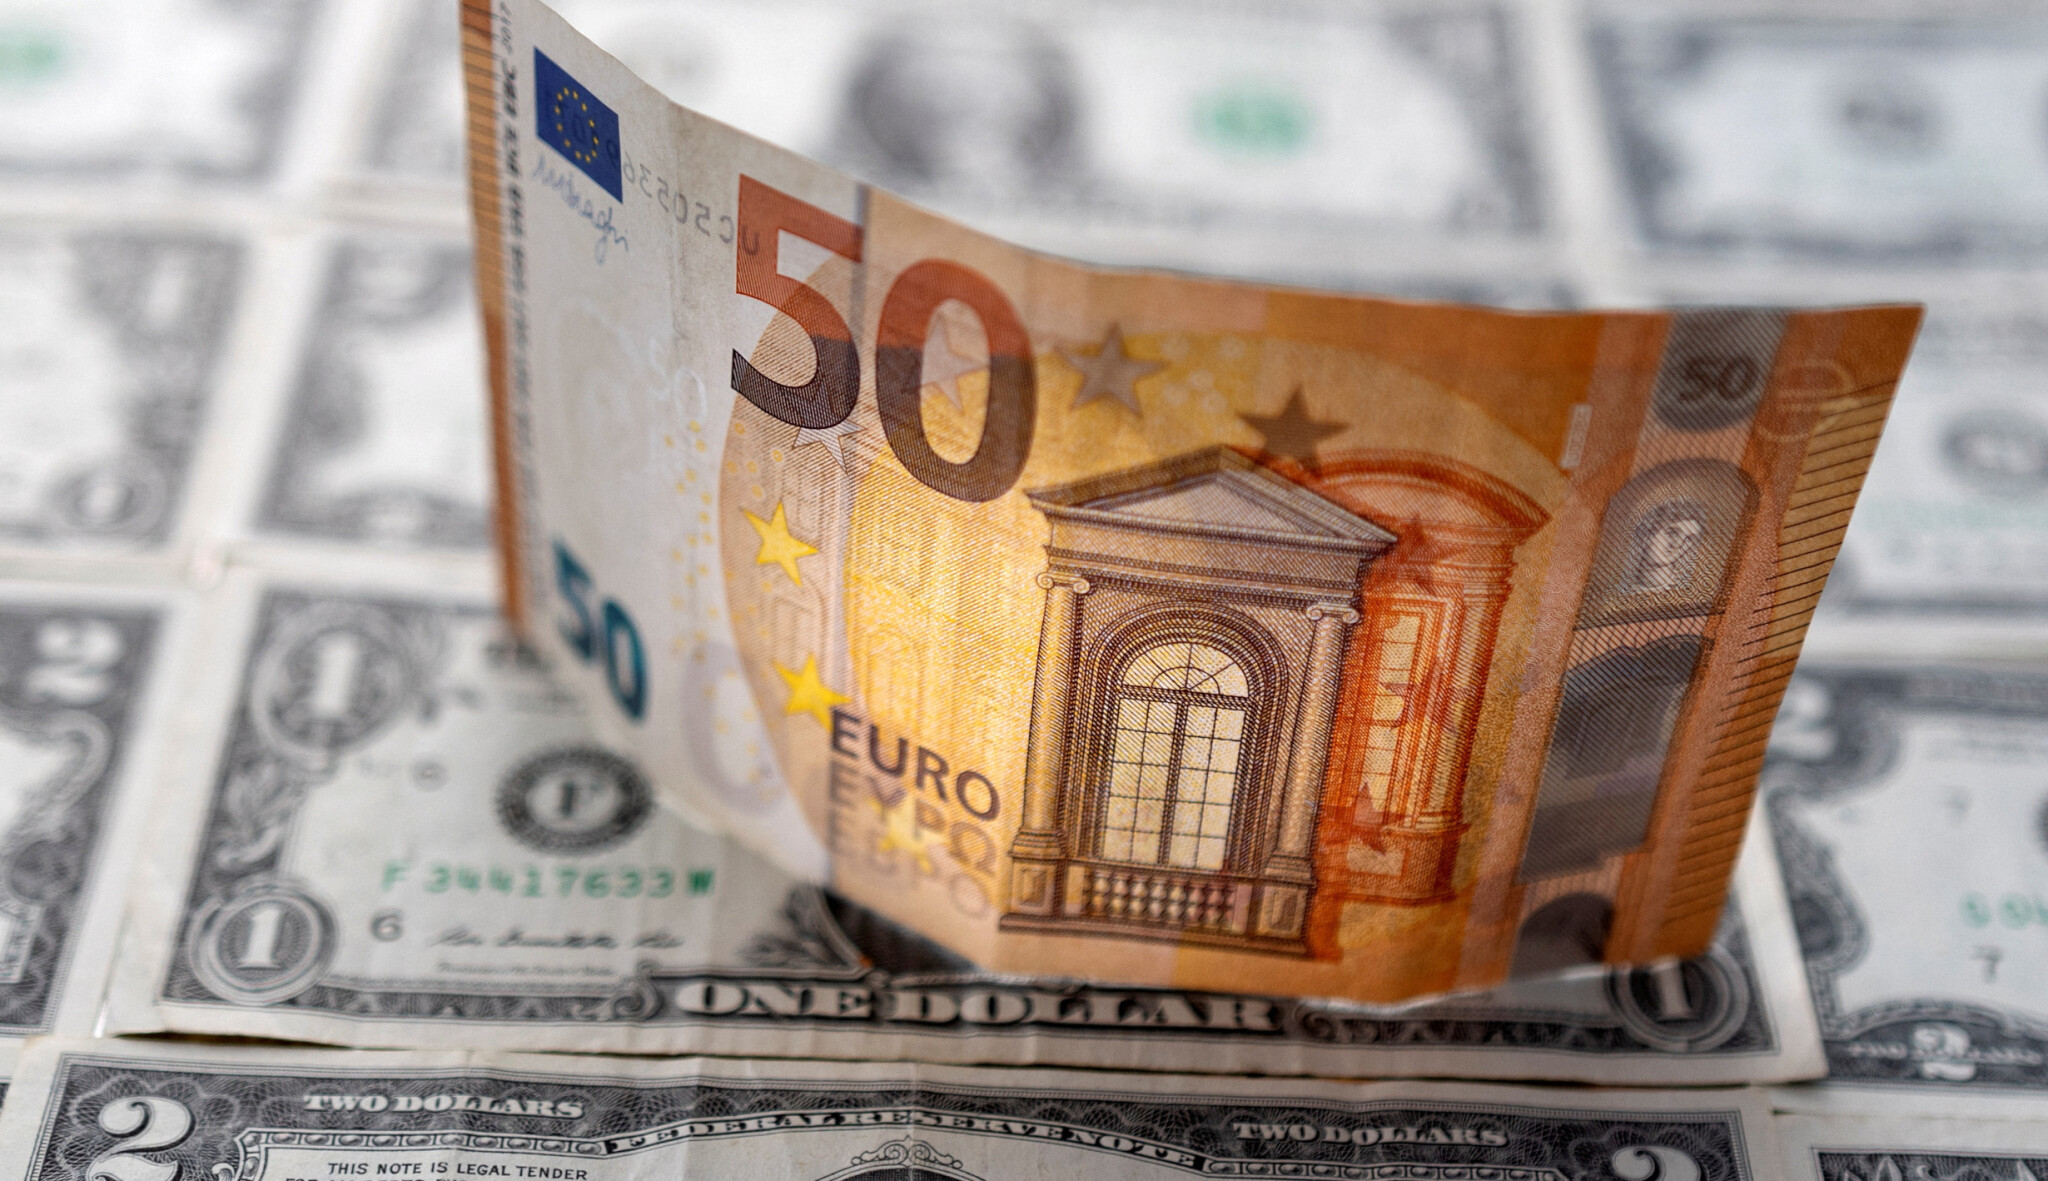 Ach euro, jak hluboko jsi kleslo! Aneb O budoucnosti jednotné měny i české koruny